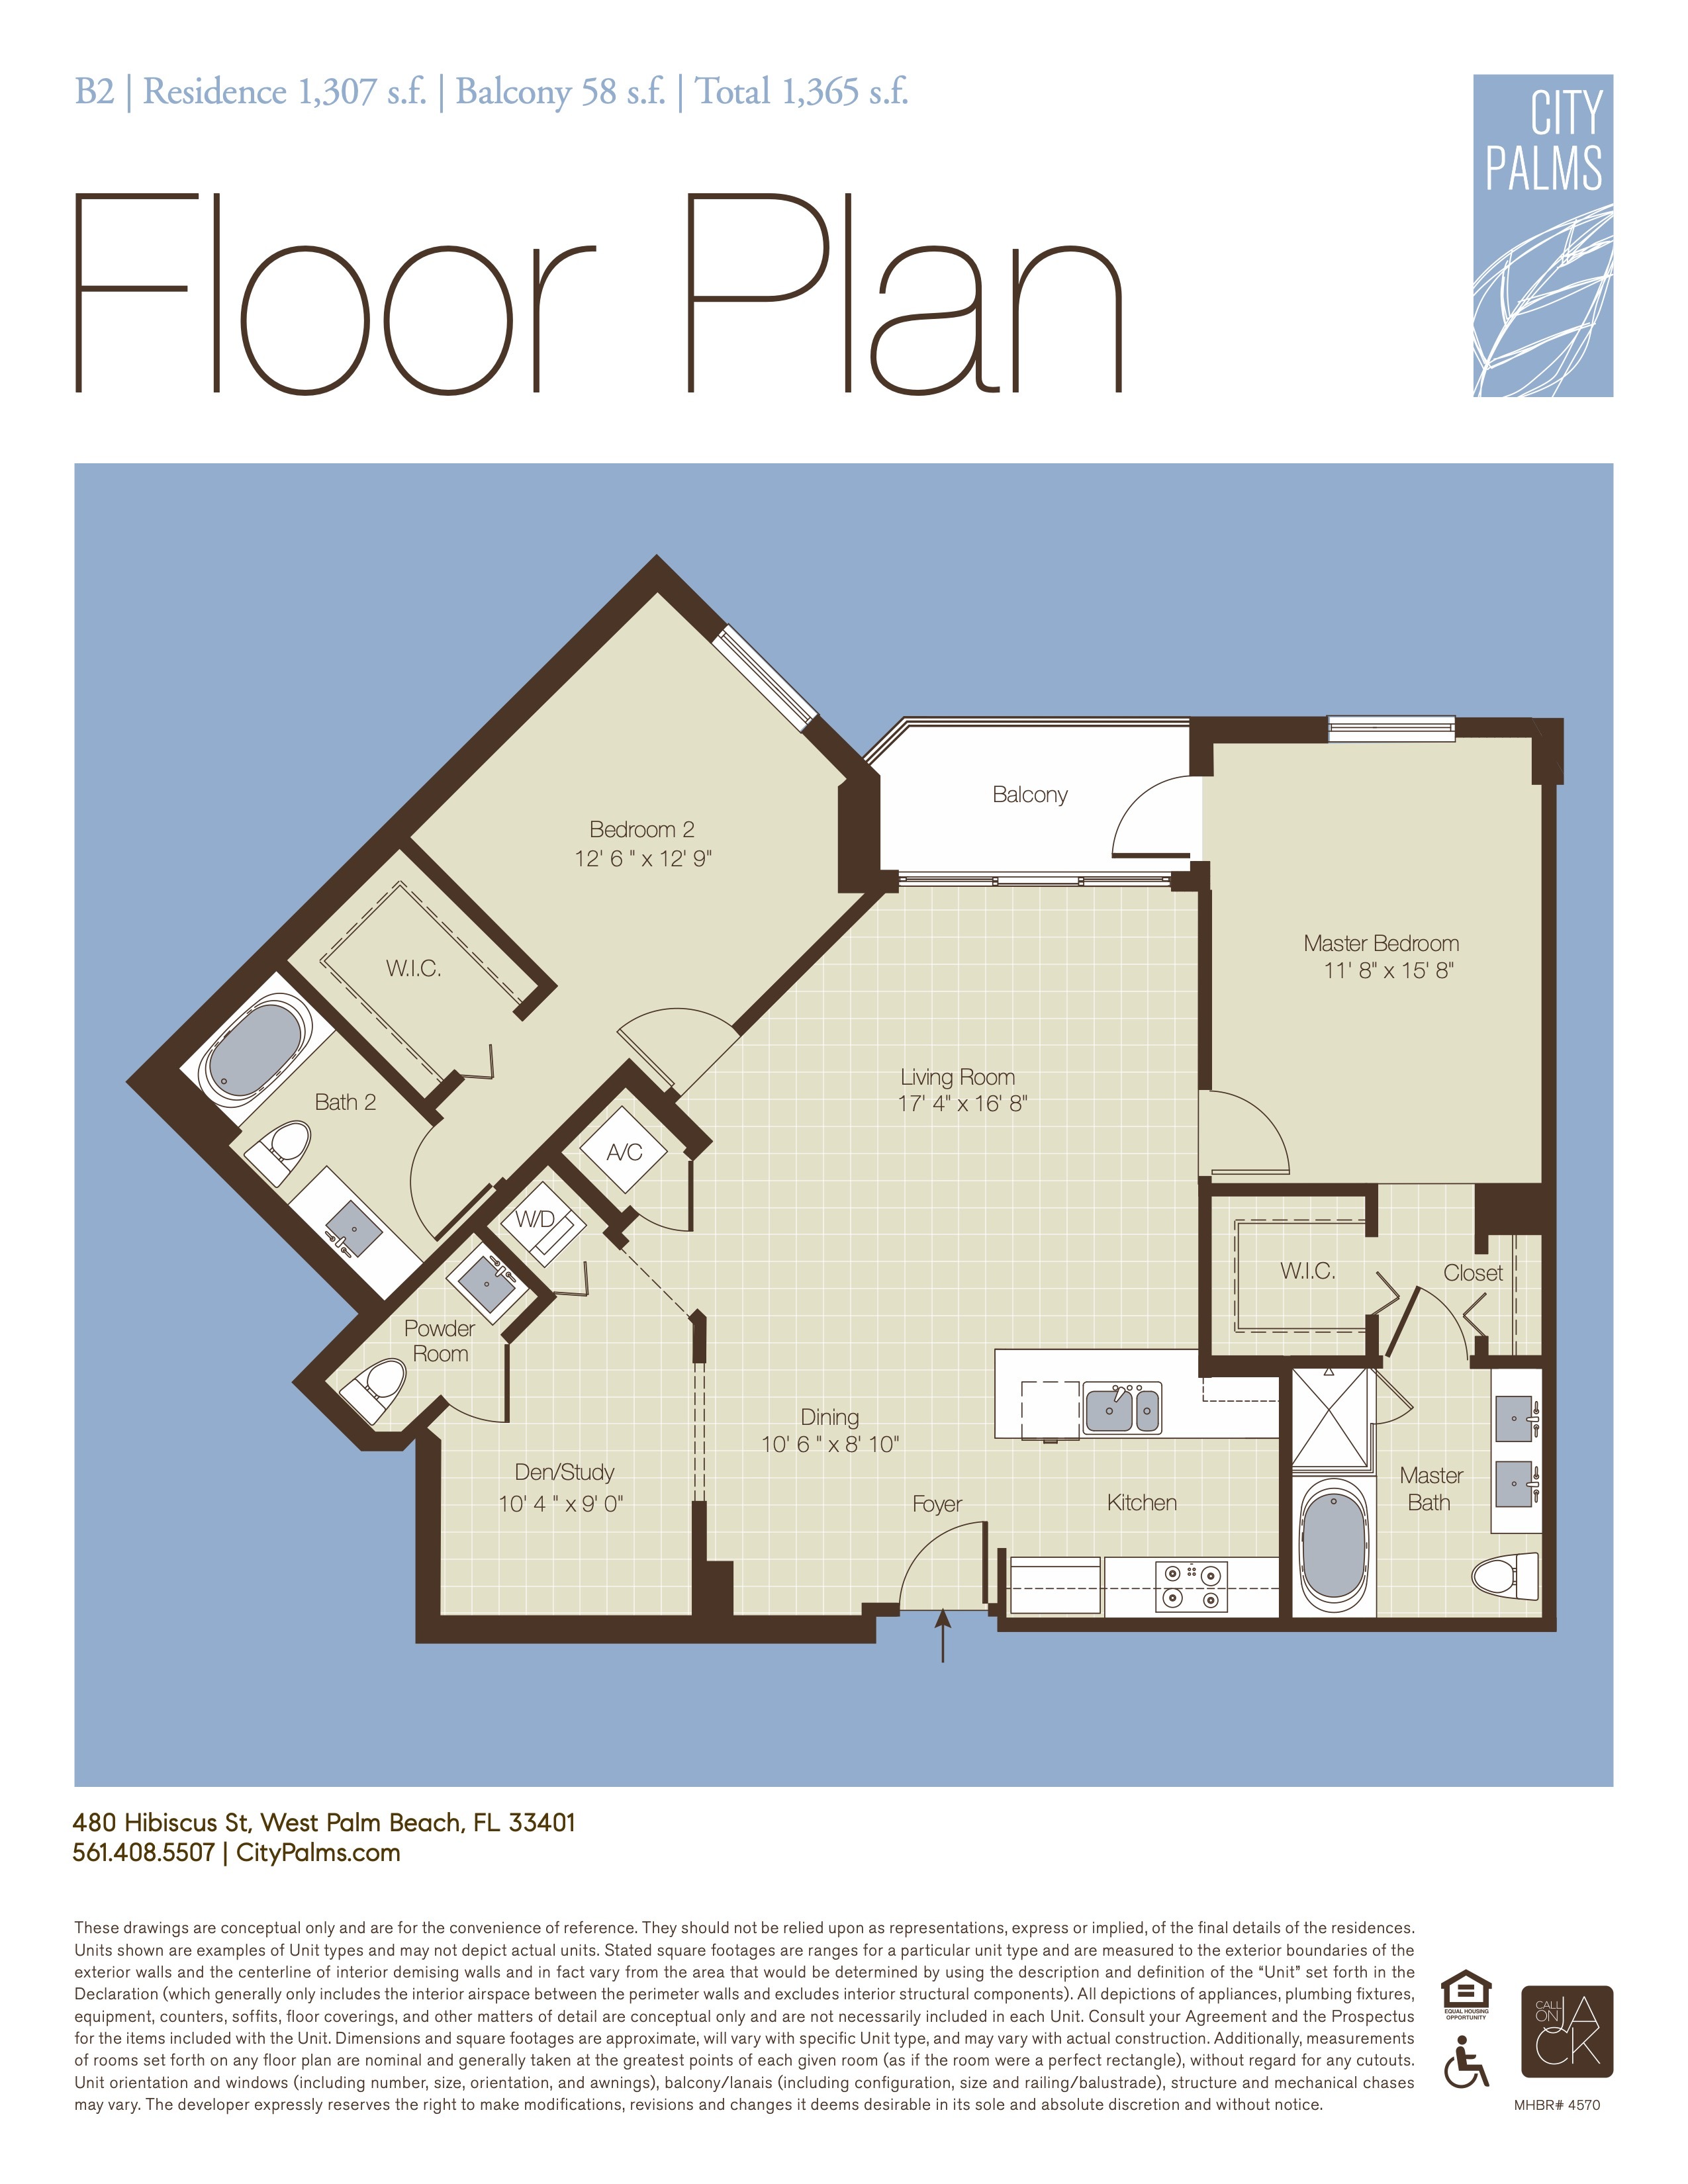 Floor Plan for CUSTOM_NO_CATEGORY_MODE, B2